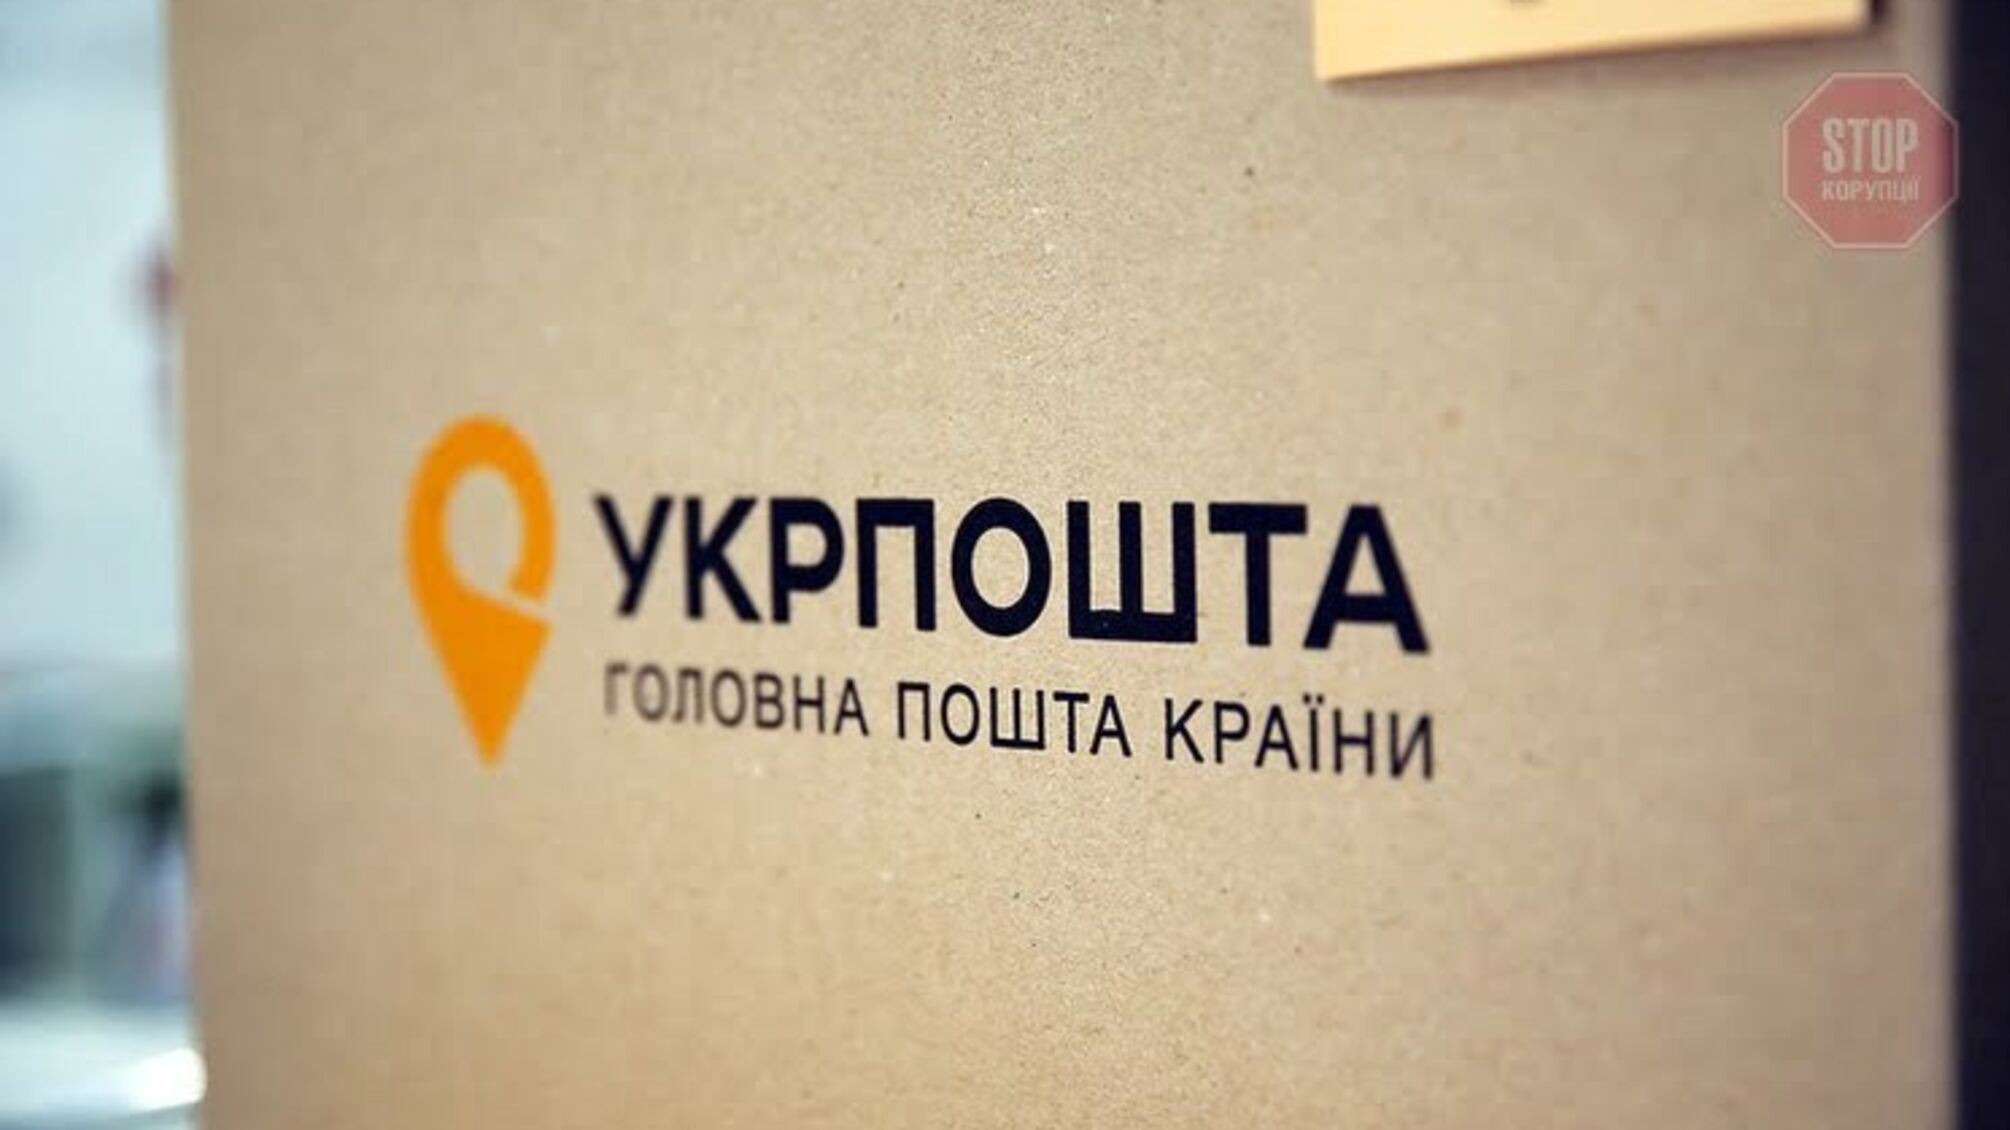 Новости Кривого Рога: в отделении Укрпочты отказались обслуживать клиента на украинском языке (видео)